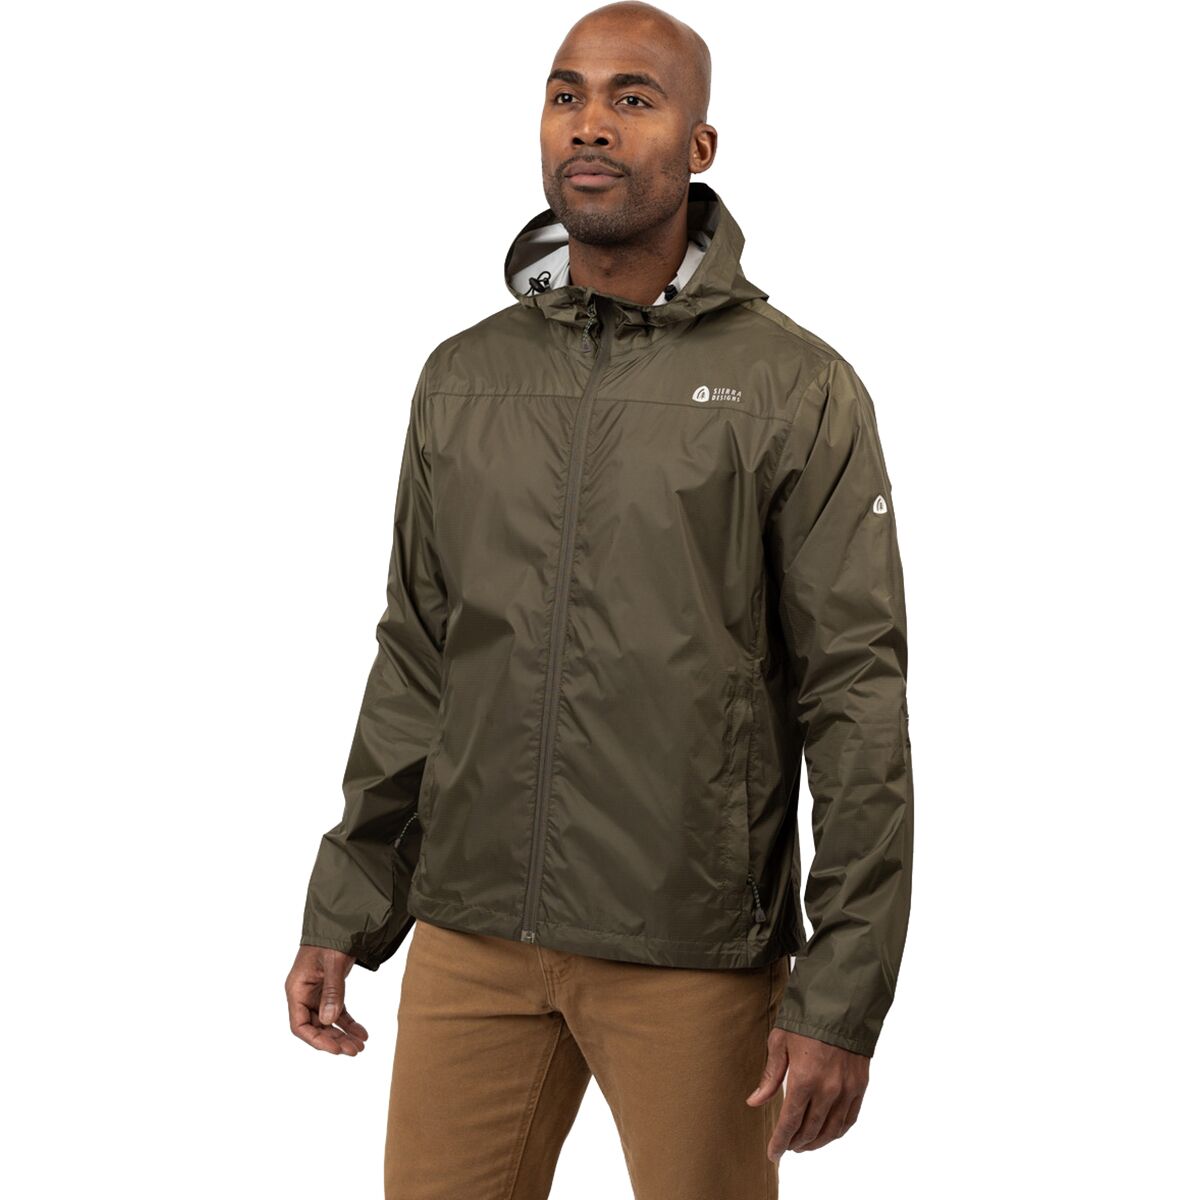 Куртка от дождя Microlight 2.0 Sierra Designs